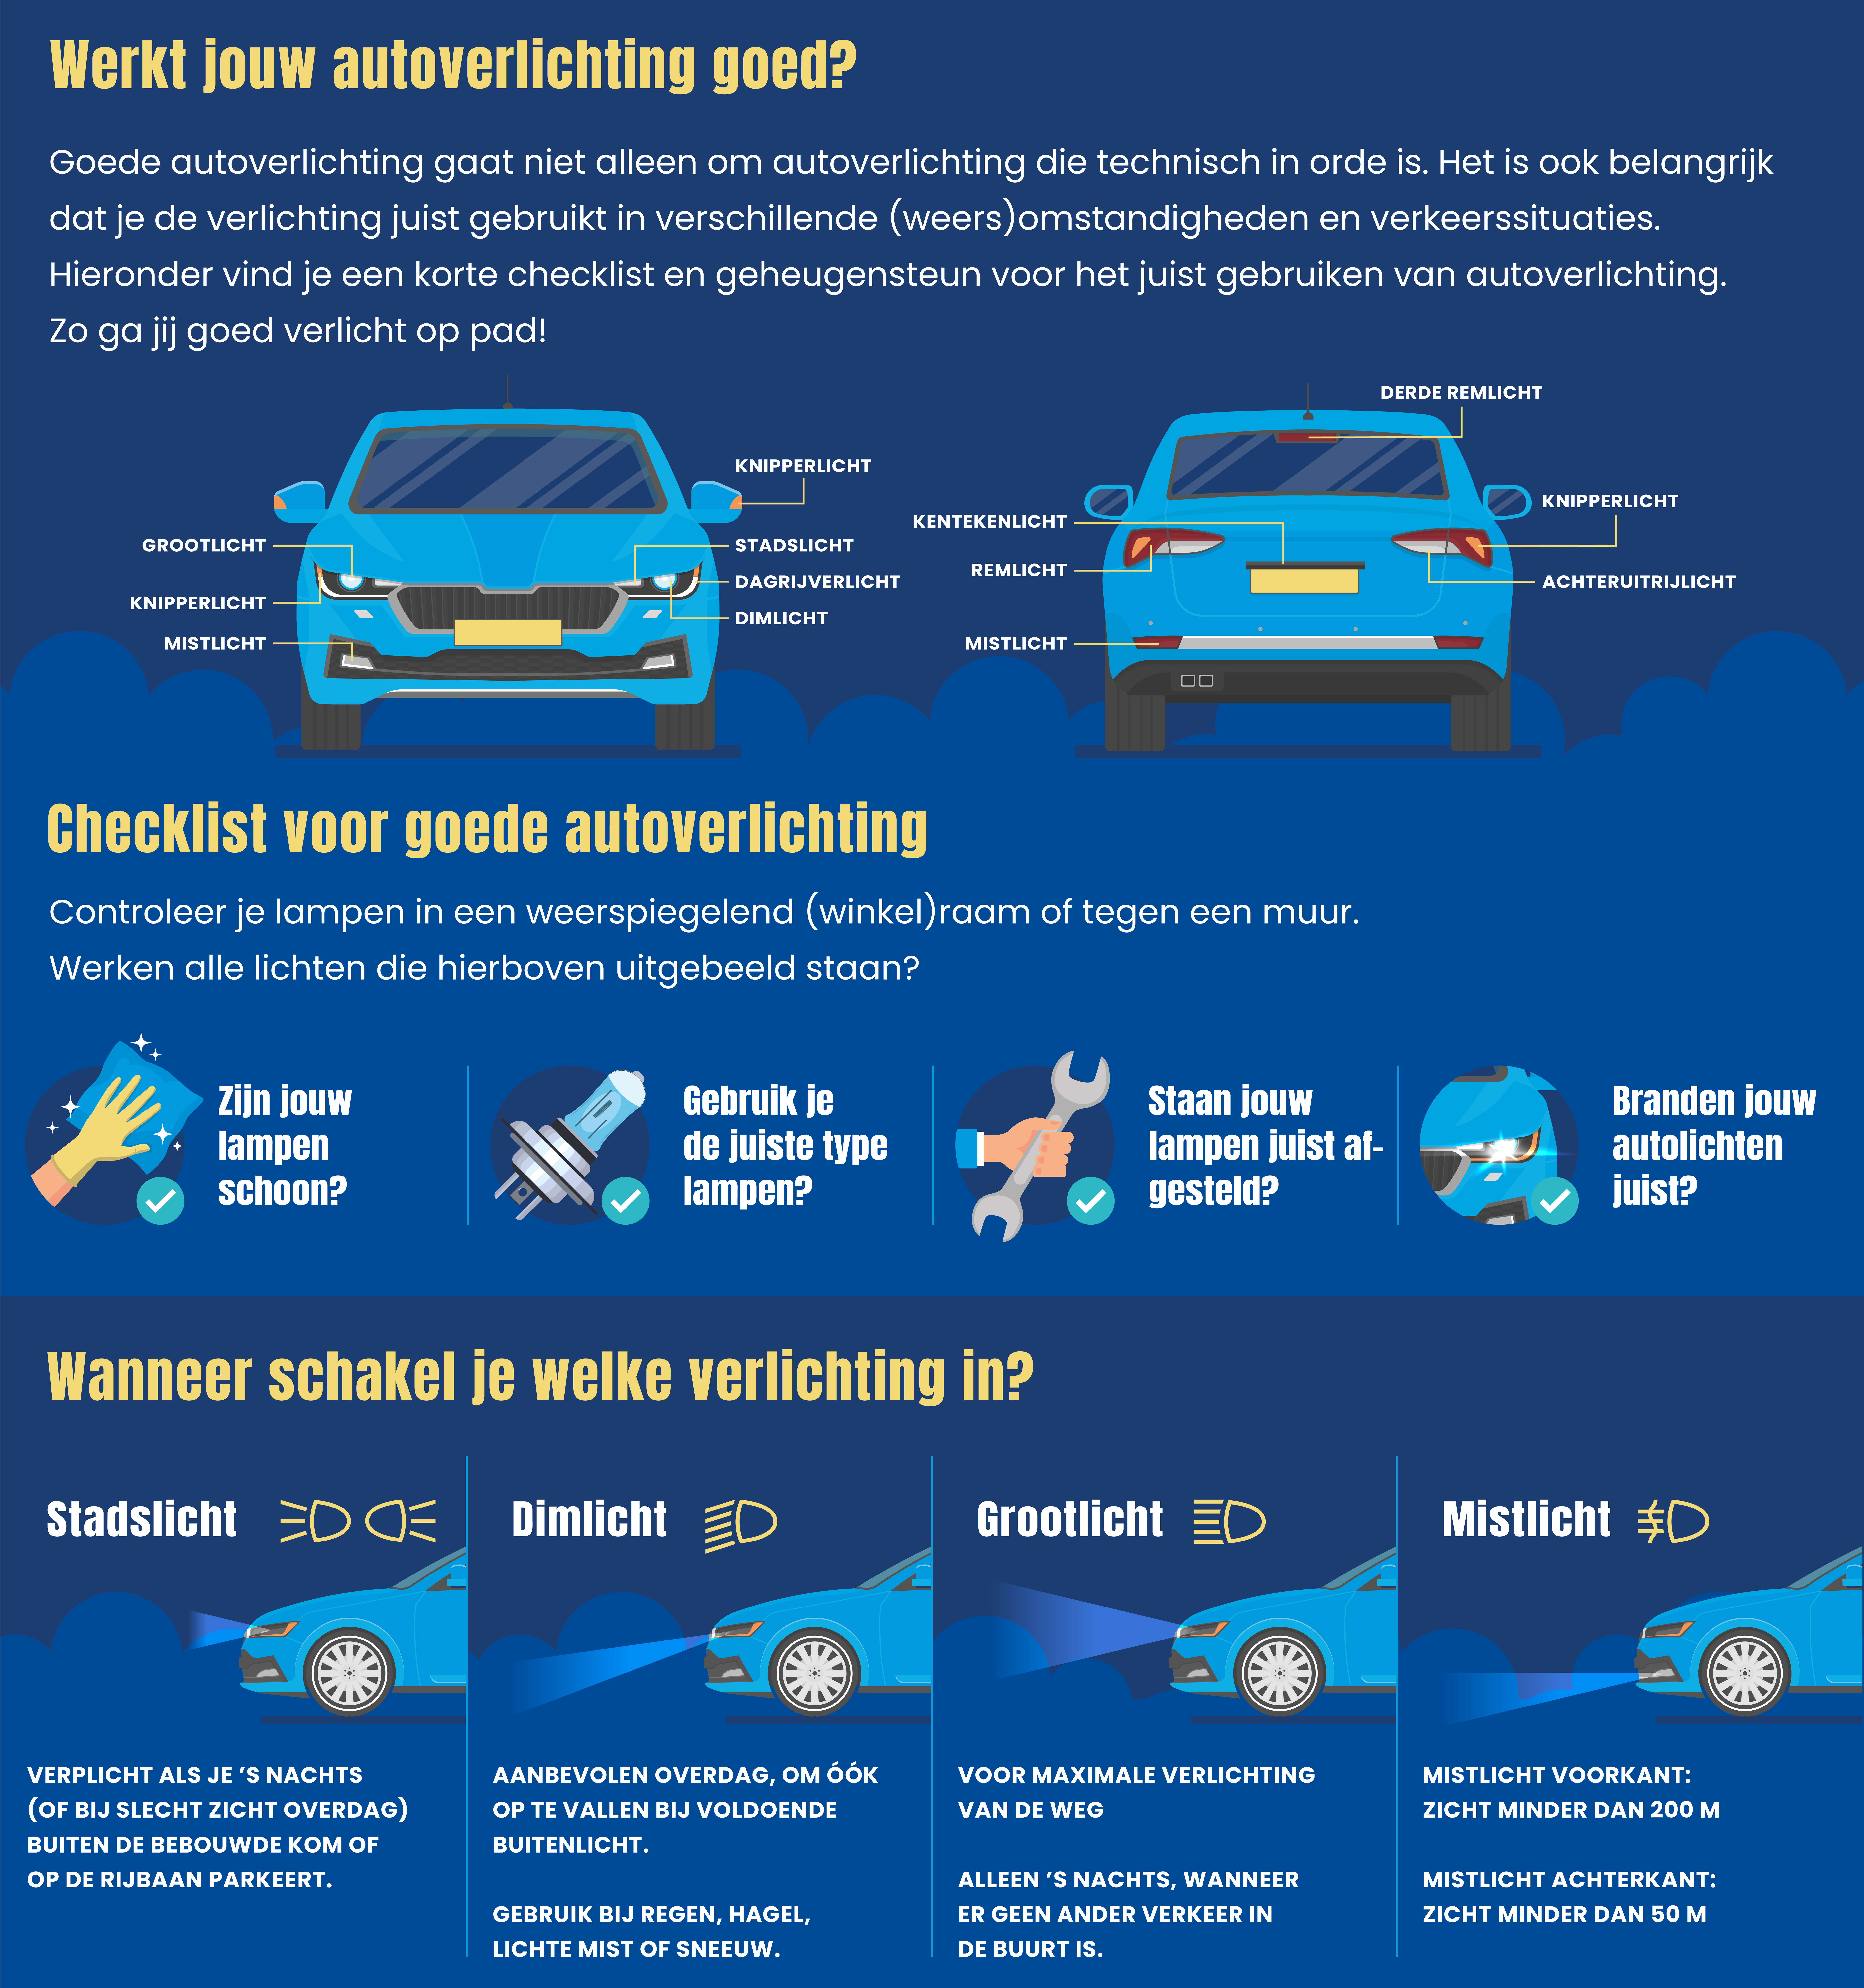 Deze infographic geeft aan wanneer de verlichting van de auto goed werkt en wanneer je de juiste verlichting in schakelt